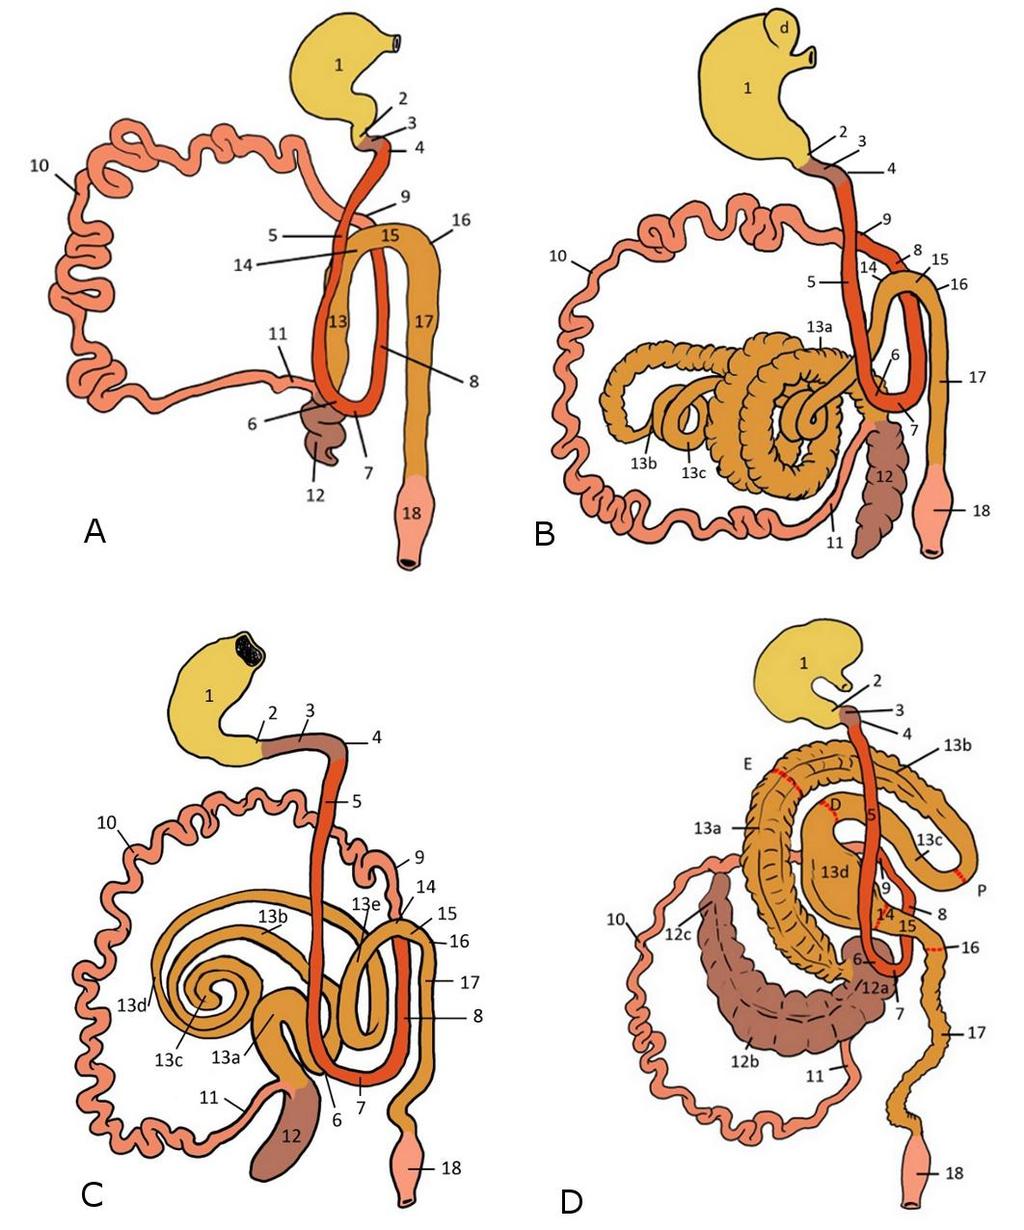 derecha, rodeando al colon ascendente (que en esta especie forma giros aplanados en forma de disco).